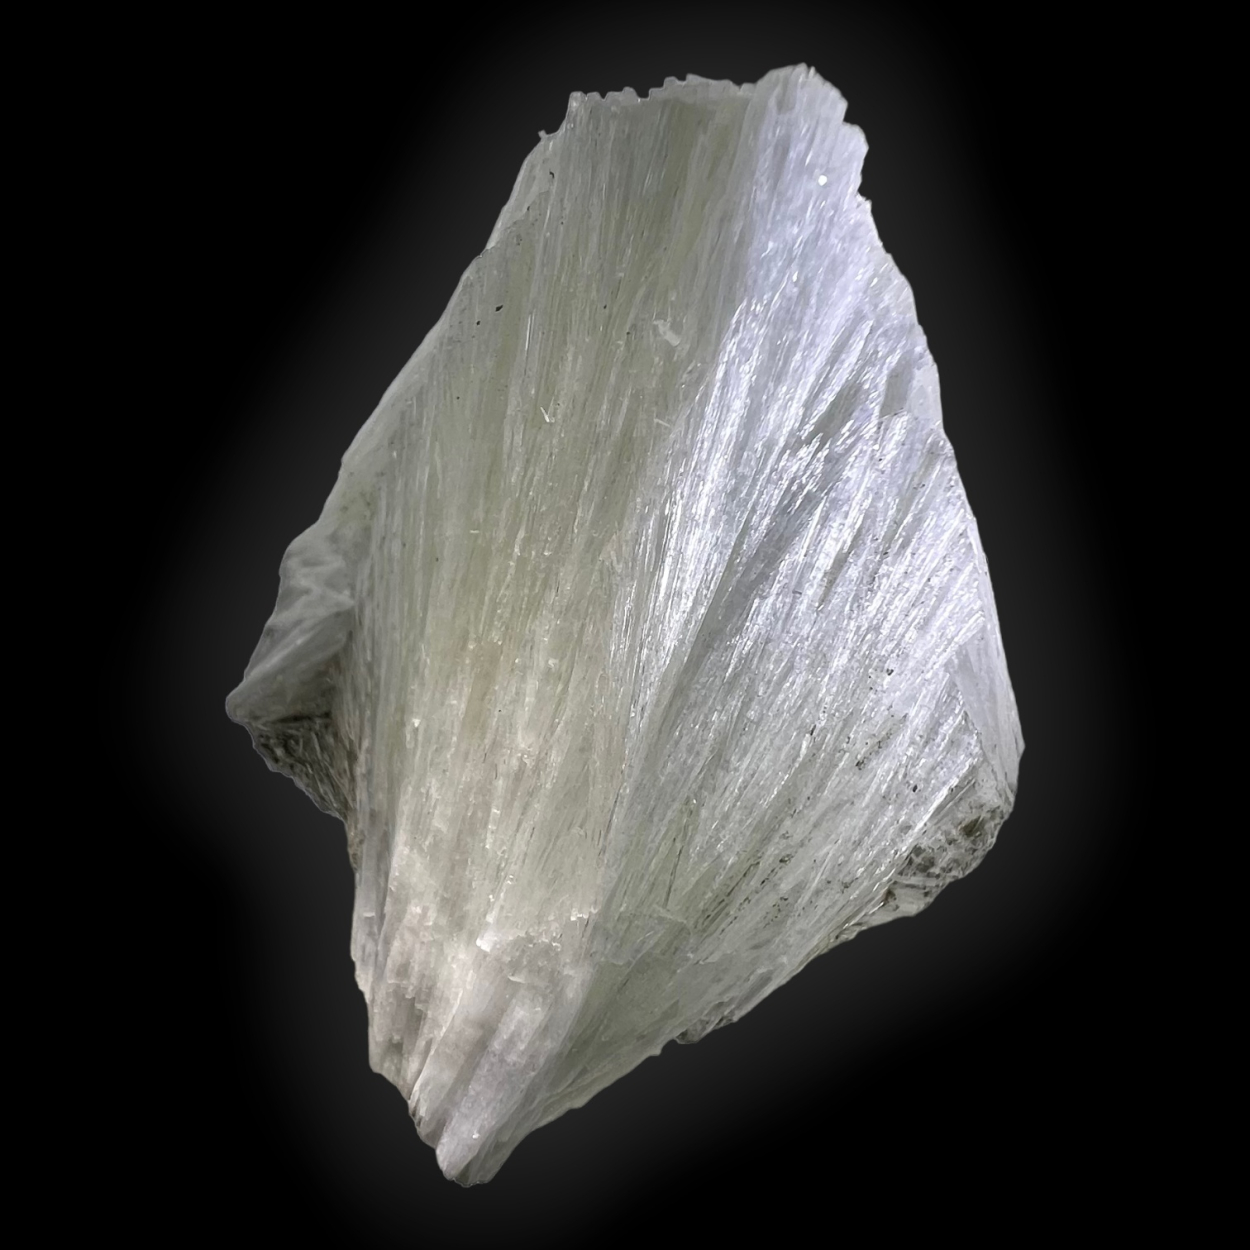 Ulexite